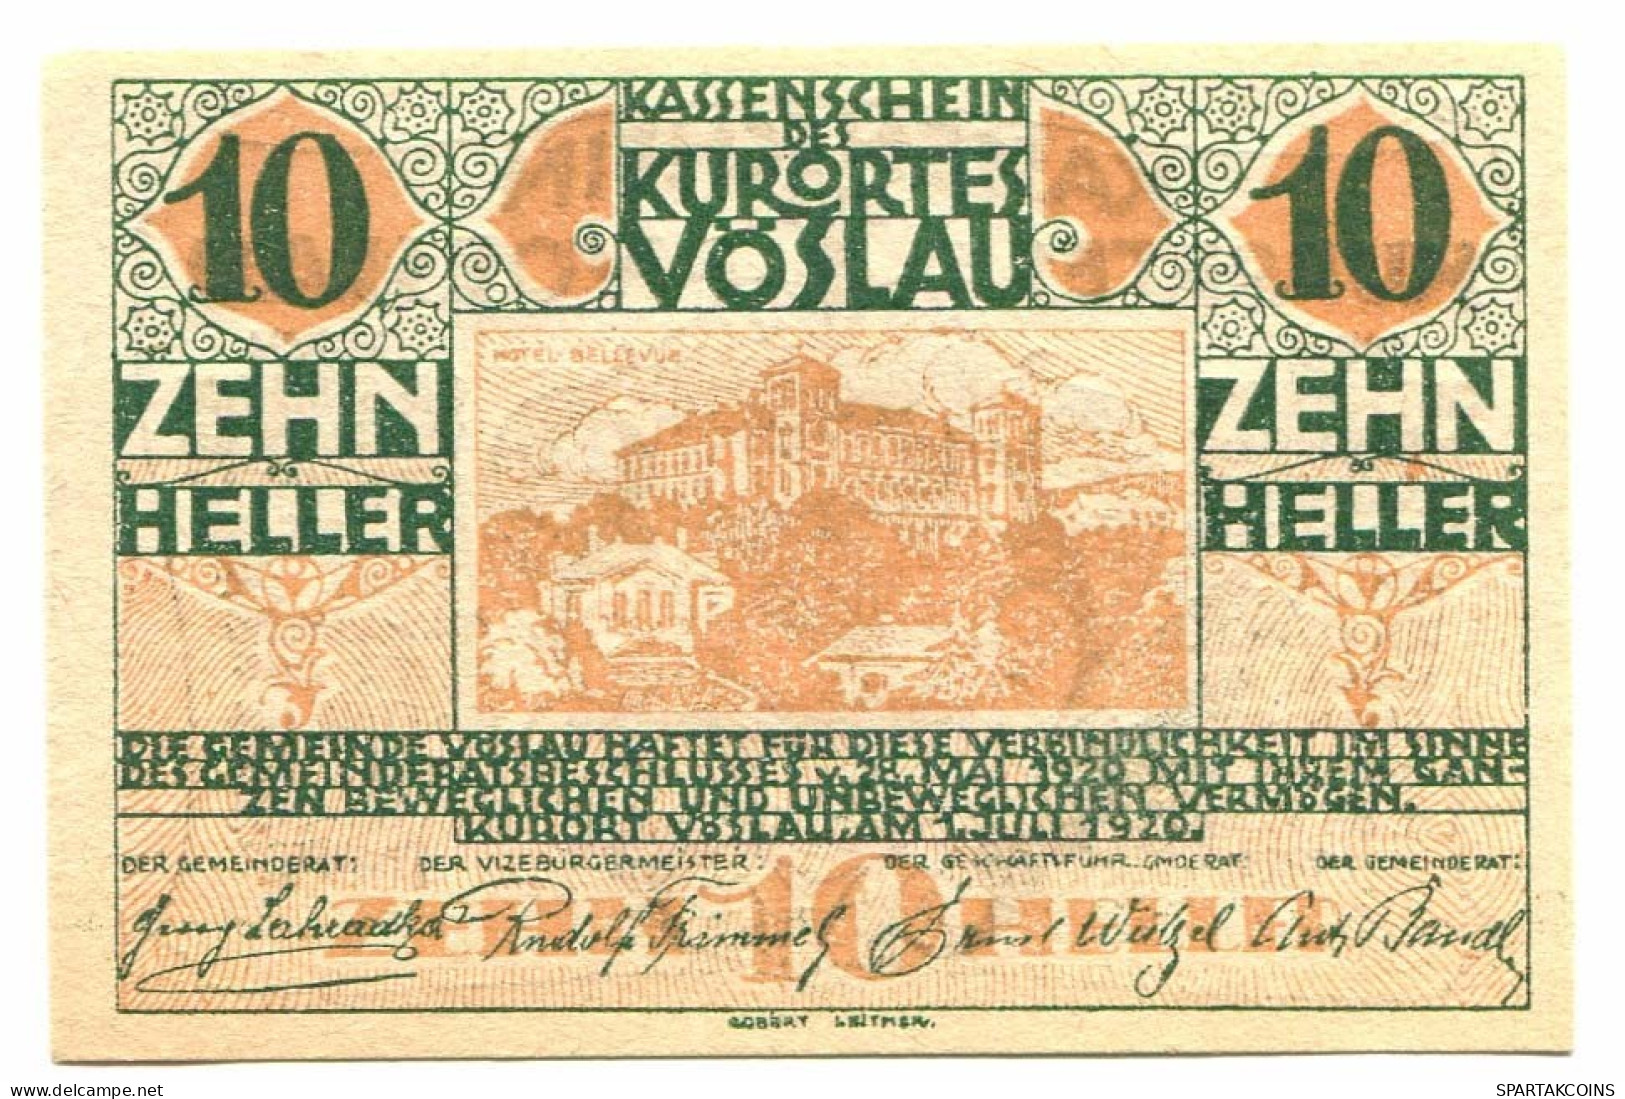 10 Heller 1920 KASSENSCHEIN Österreich Notgeld Papiergeld Banknote #P10748 - [11] Local Banknote Issues